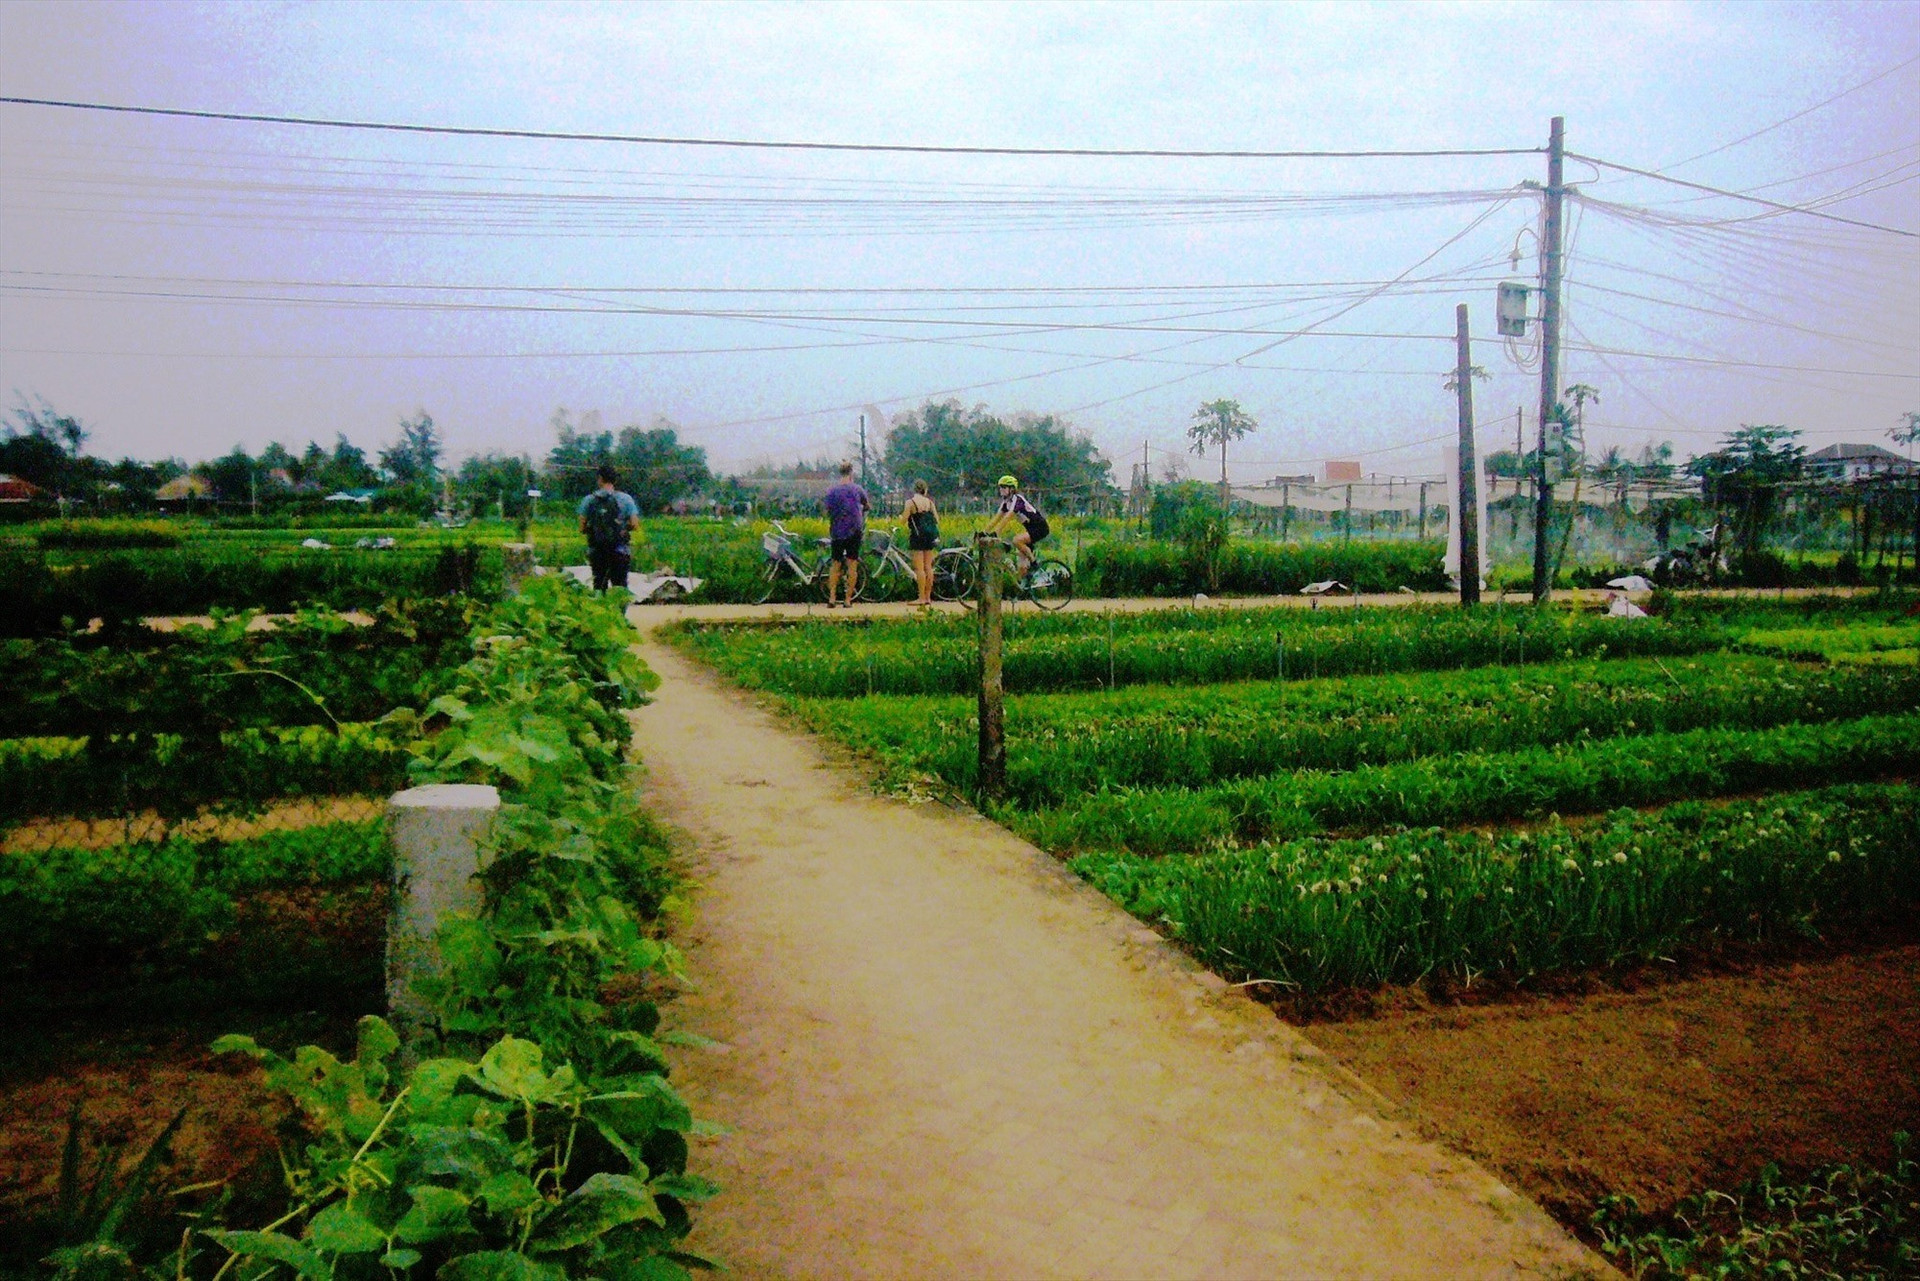 Landscape of Tra Que vegetable village